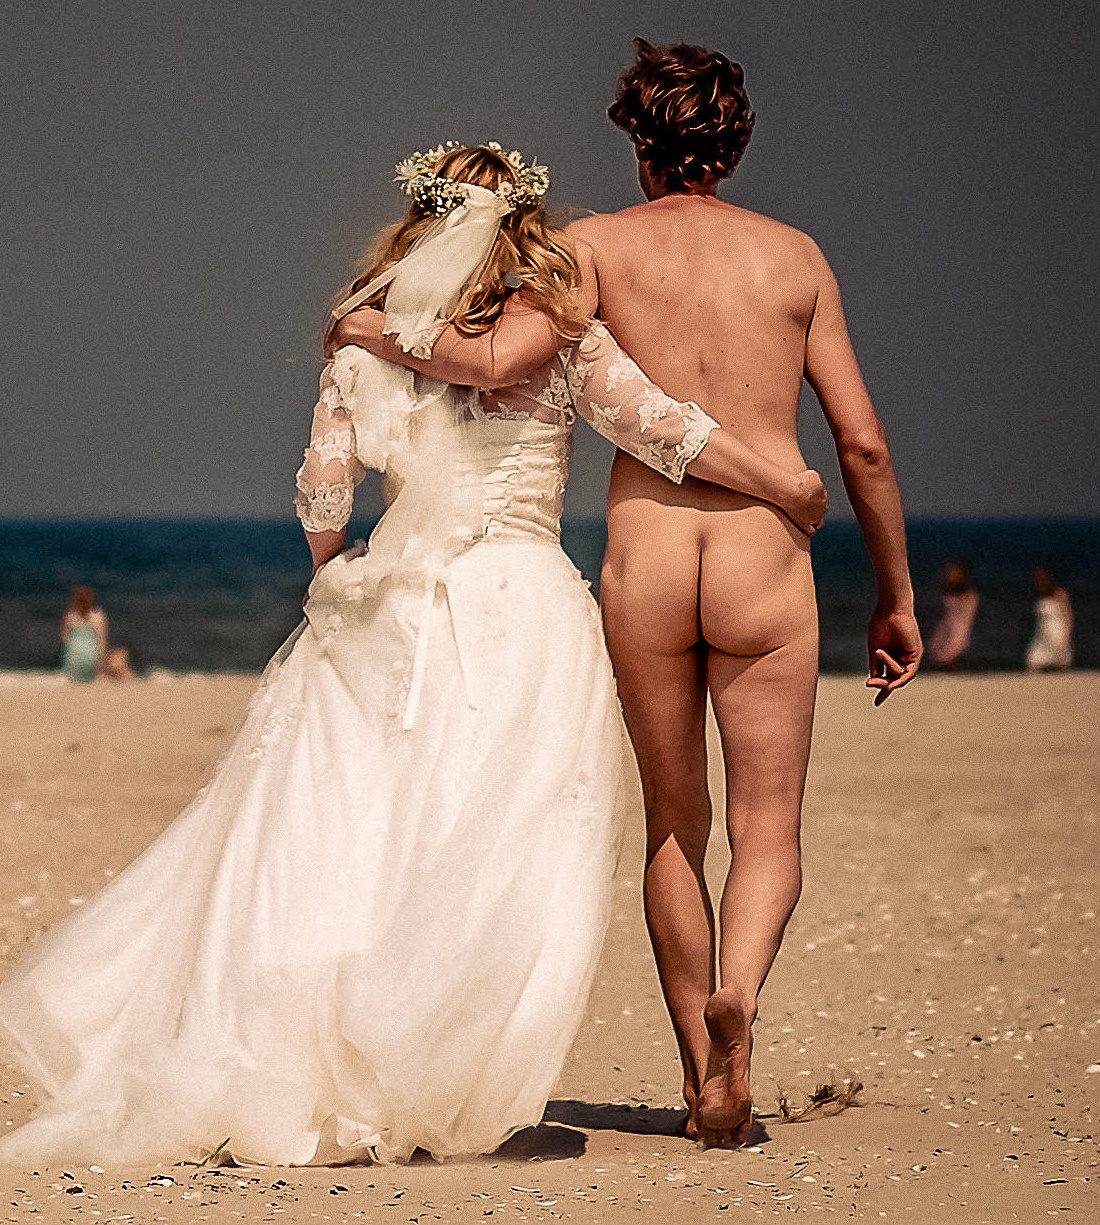 Nude wedding photoshoot